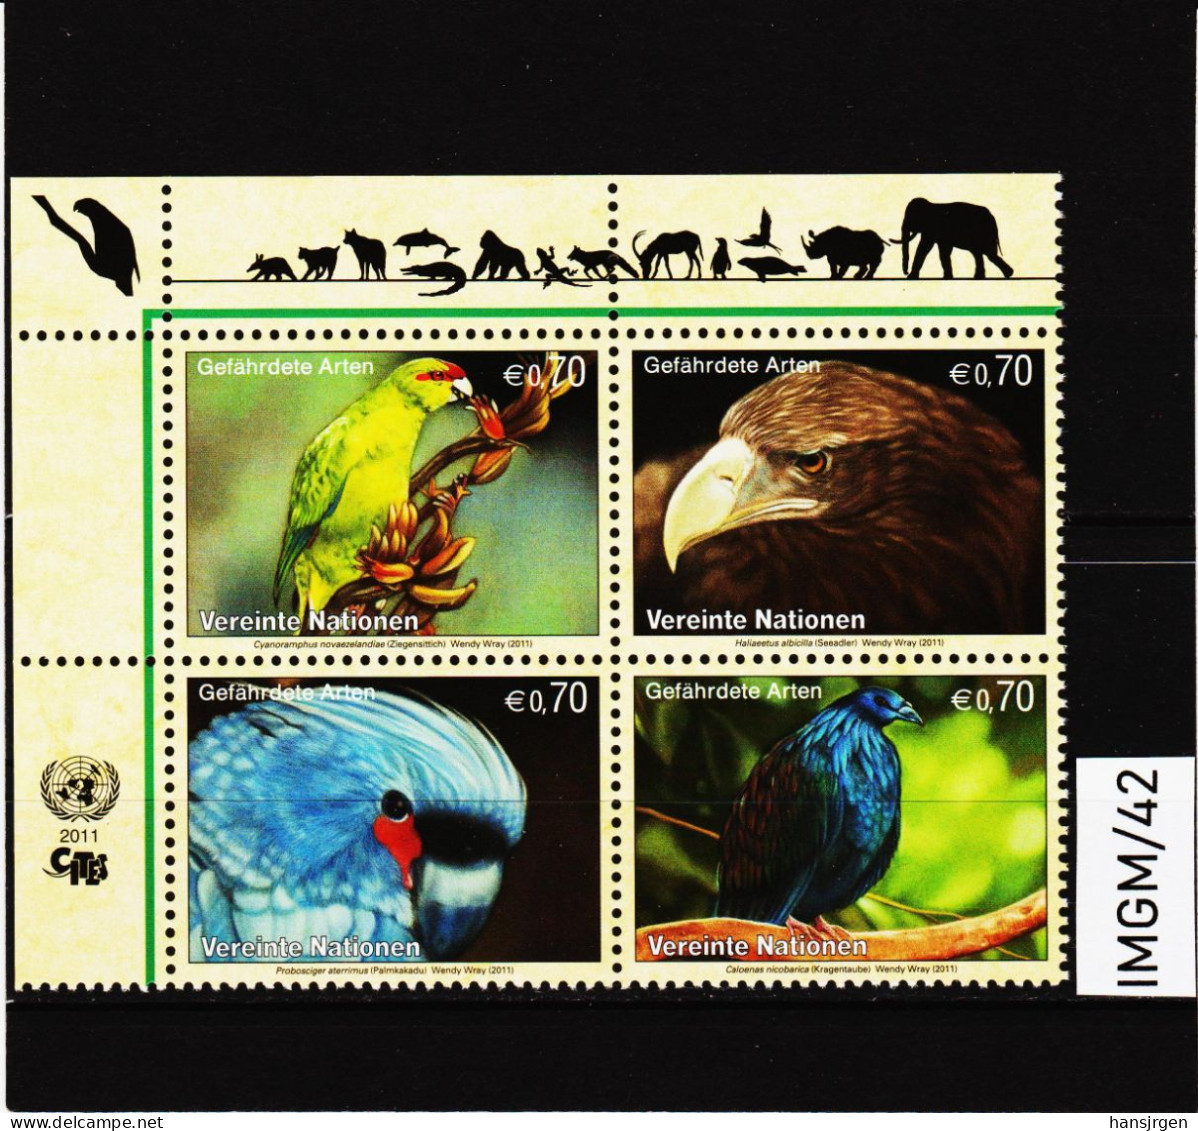 IMGM/42 VEREINTE NATIONEN UNO WIEN 2011  MICHL  732/35 VIERERBLOCK ** Postfrisch Siehe ABBILBUNG - Unused Stamps